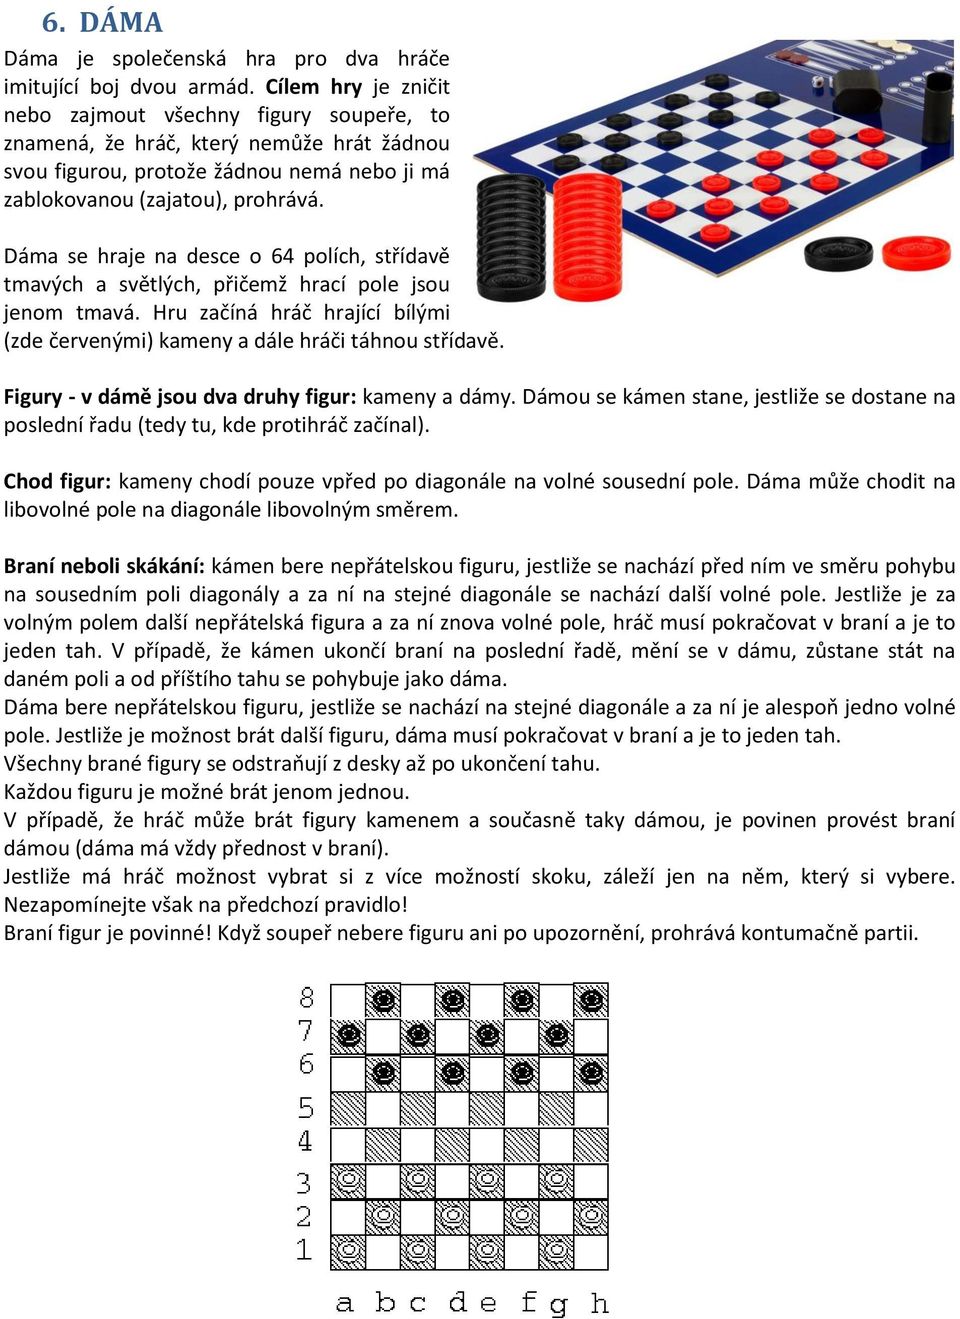 Dáma se hraje na desce o 64 polích, střídavě tmavých a světlých, přičemž hrací pole jsou jenom tmavá. Hru začíná hráč hrající bílými (zde červenými) kameny a dále hráči táhnou střídavě.